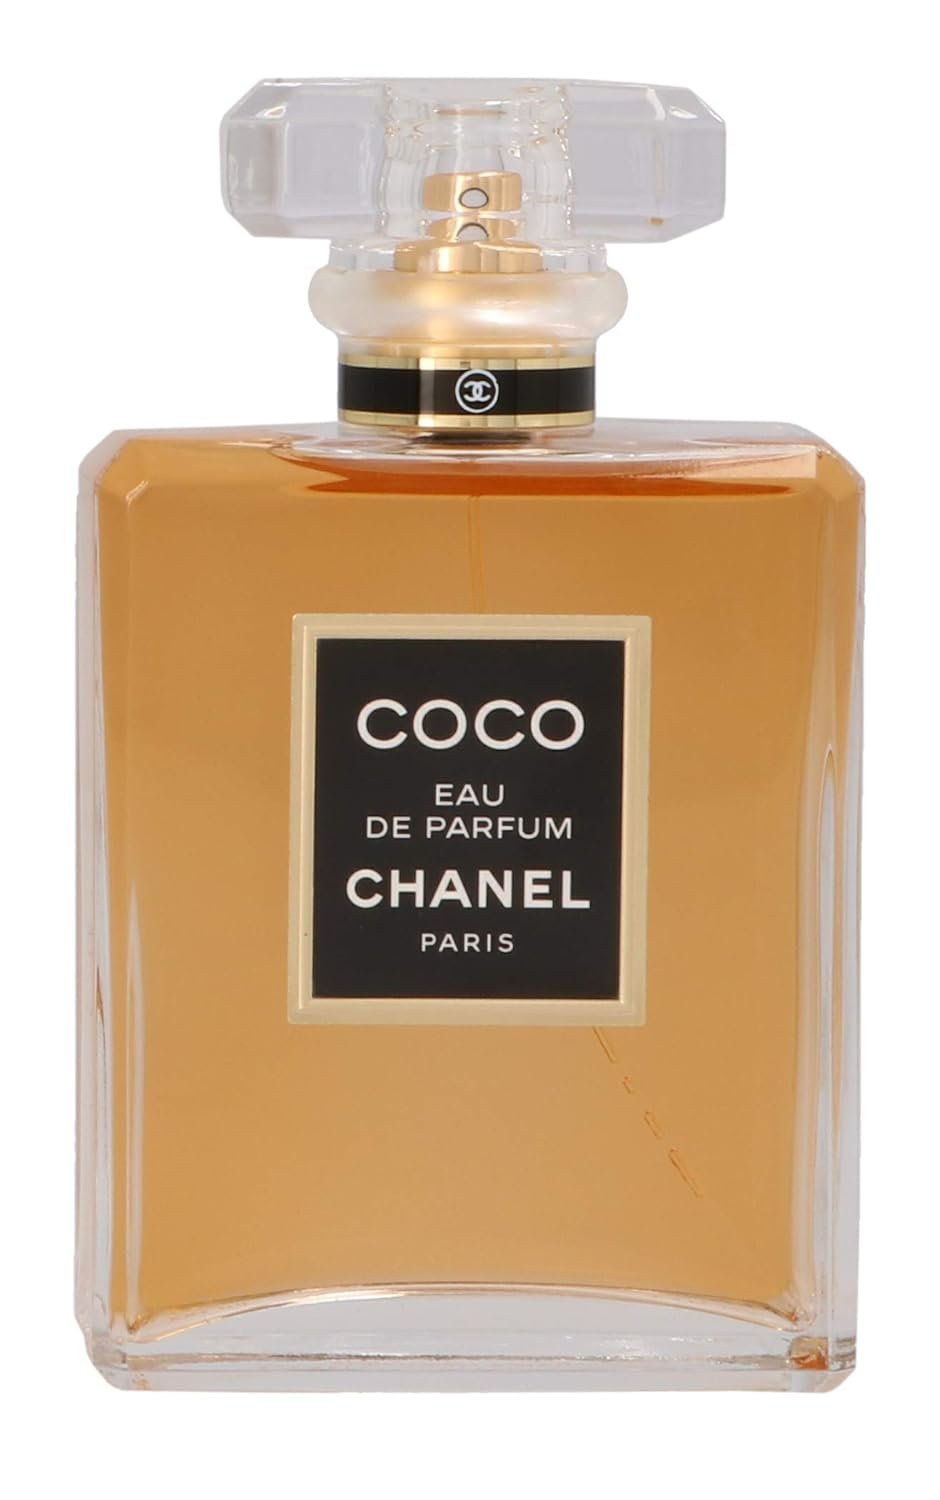 Coco by Chanel Eau De Parfum Spray Review